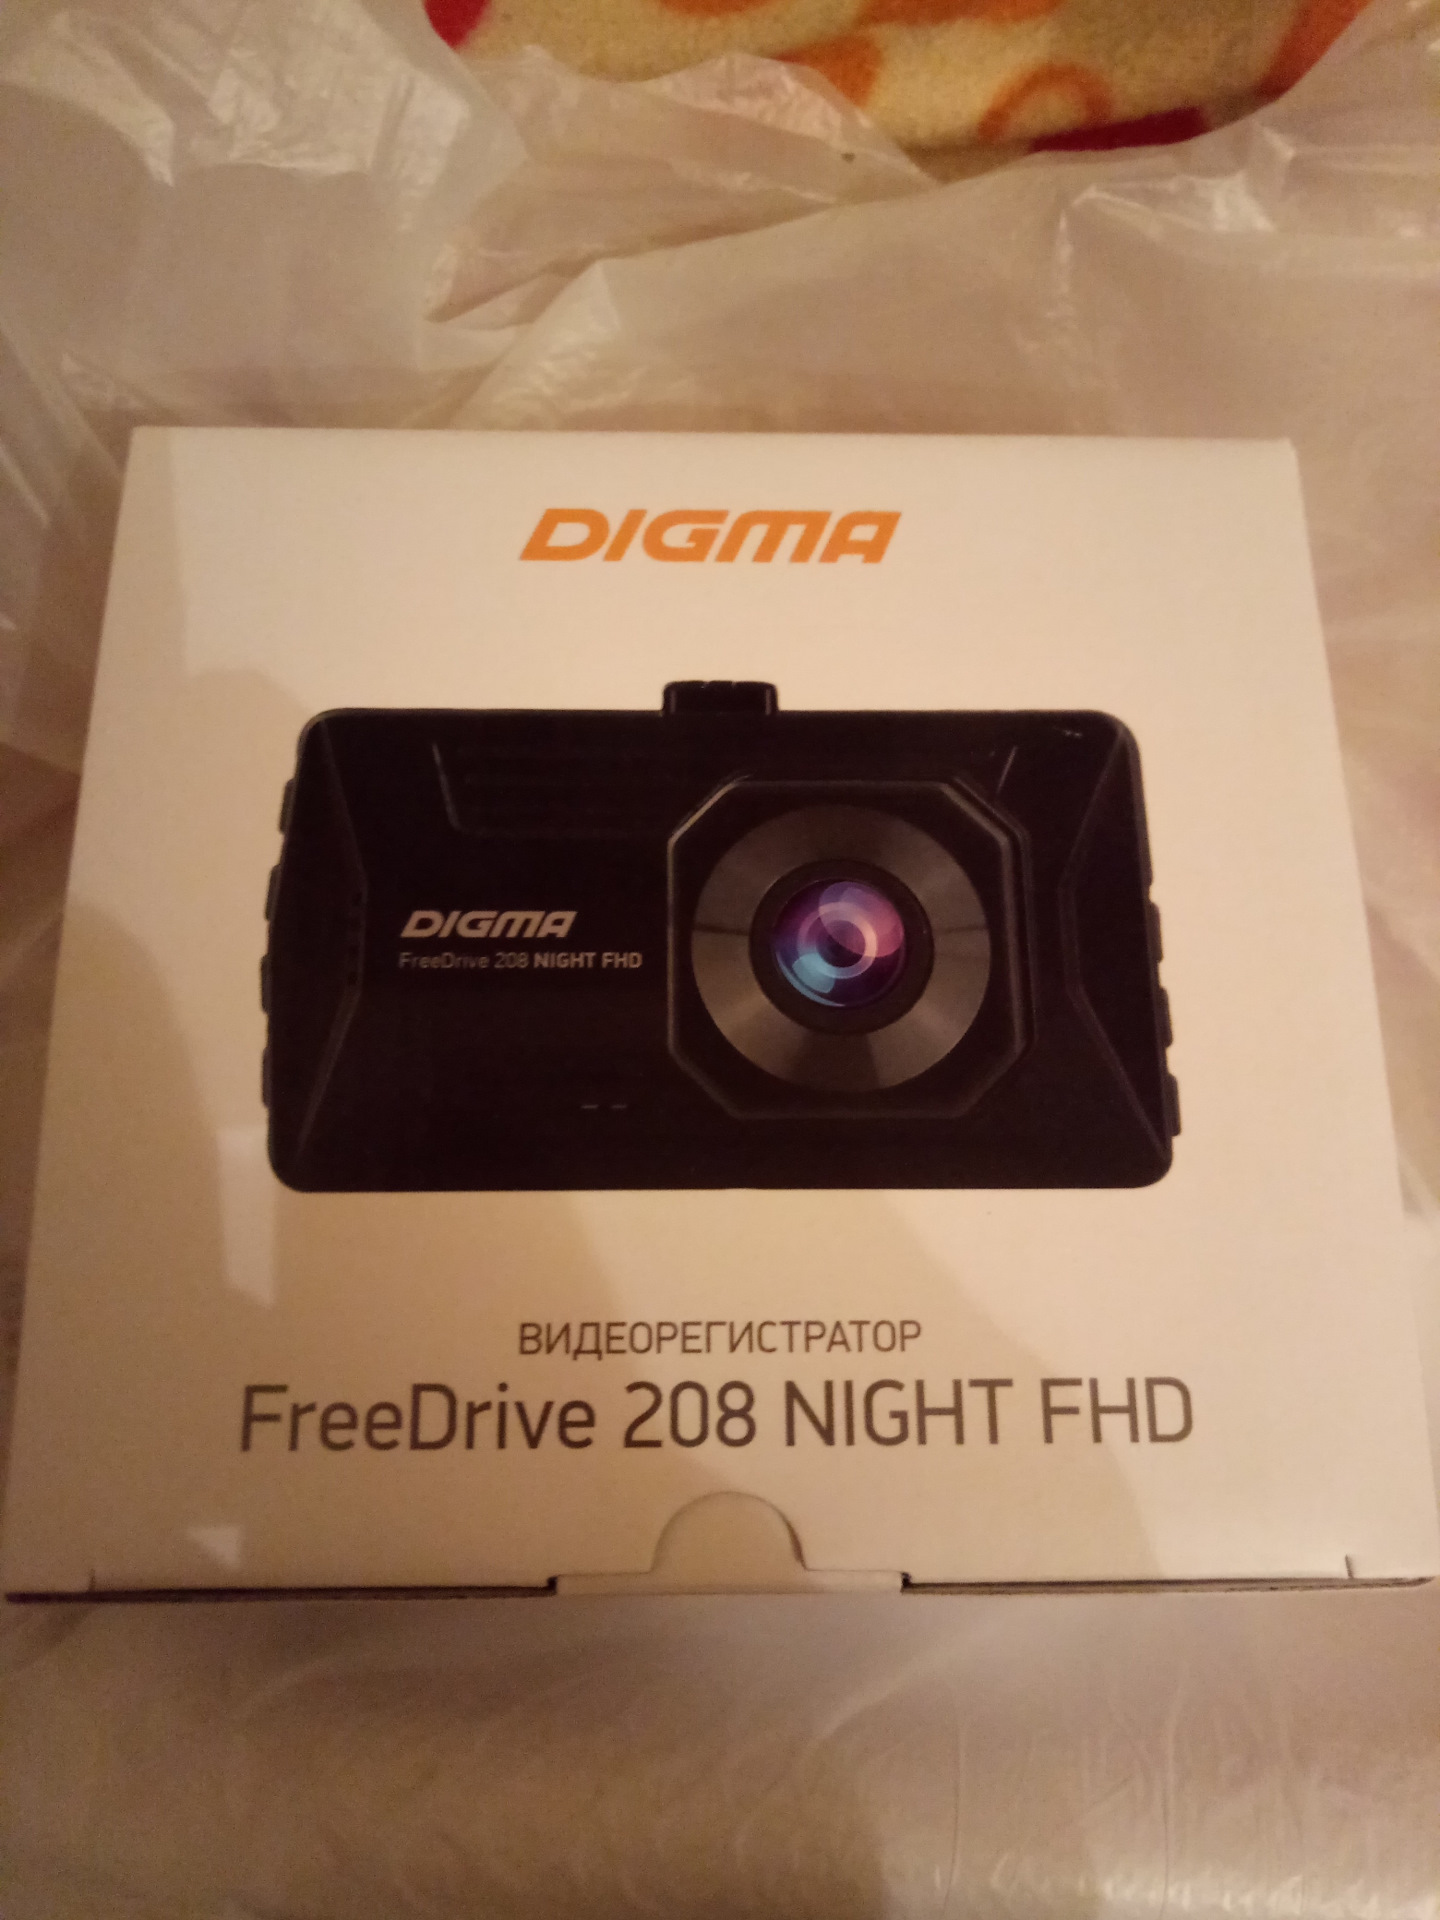 Видеорегистратор digma freedrive 208 dual night fhd black монтаж